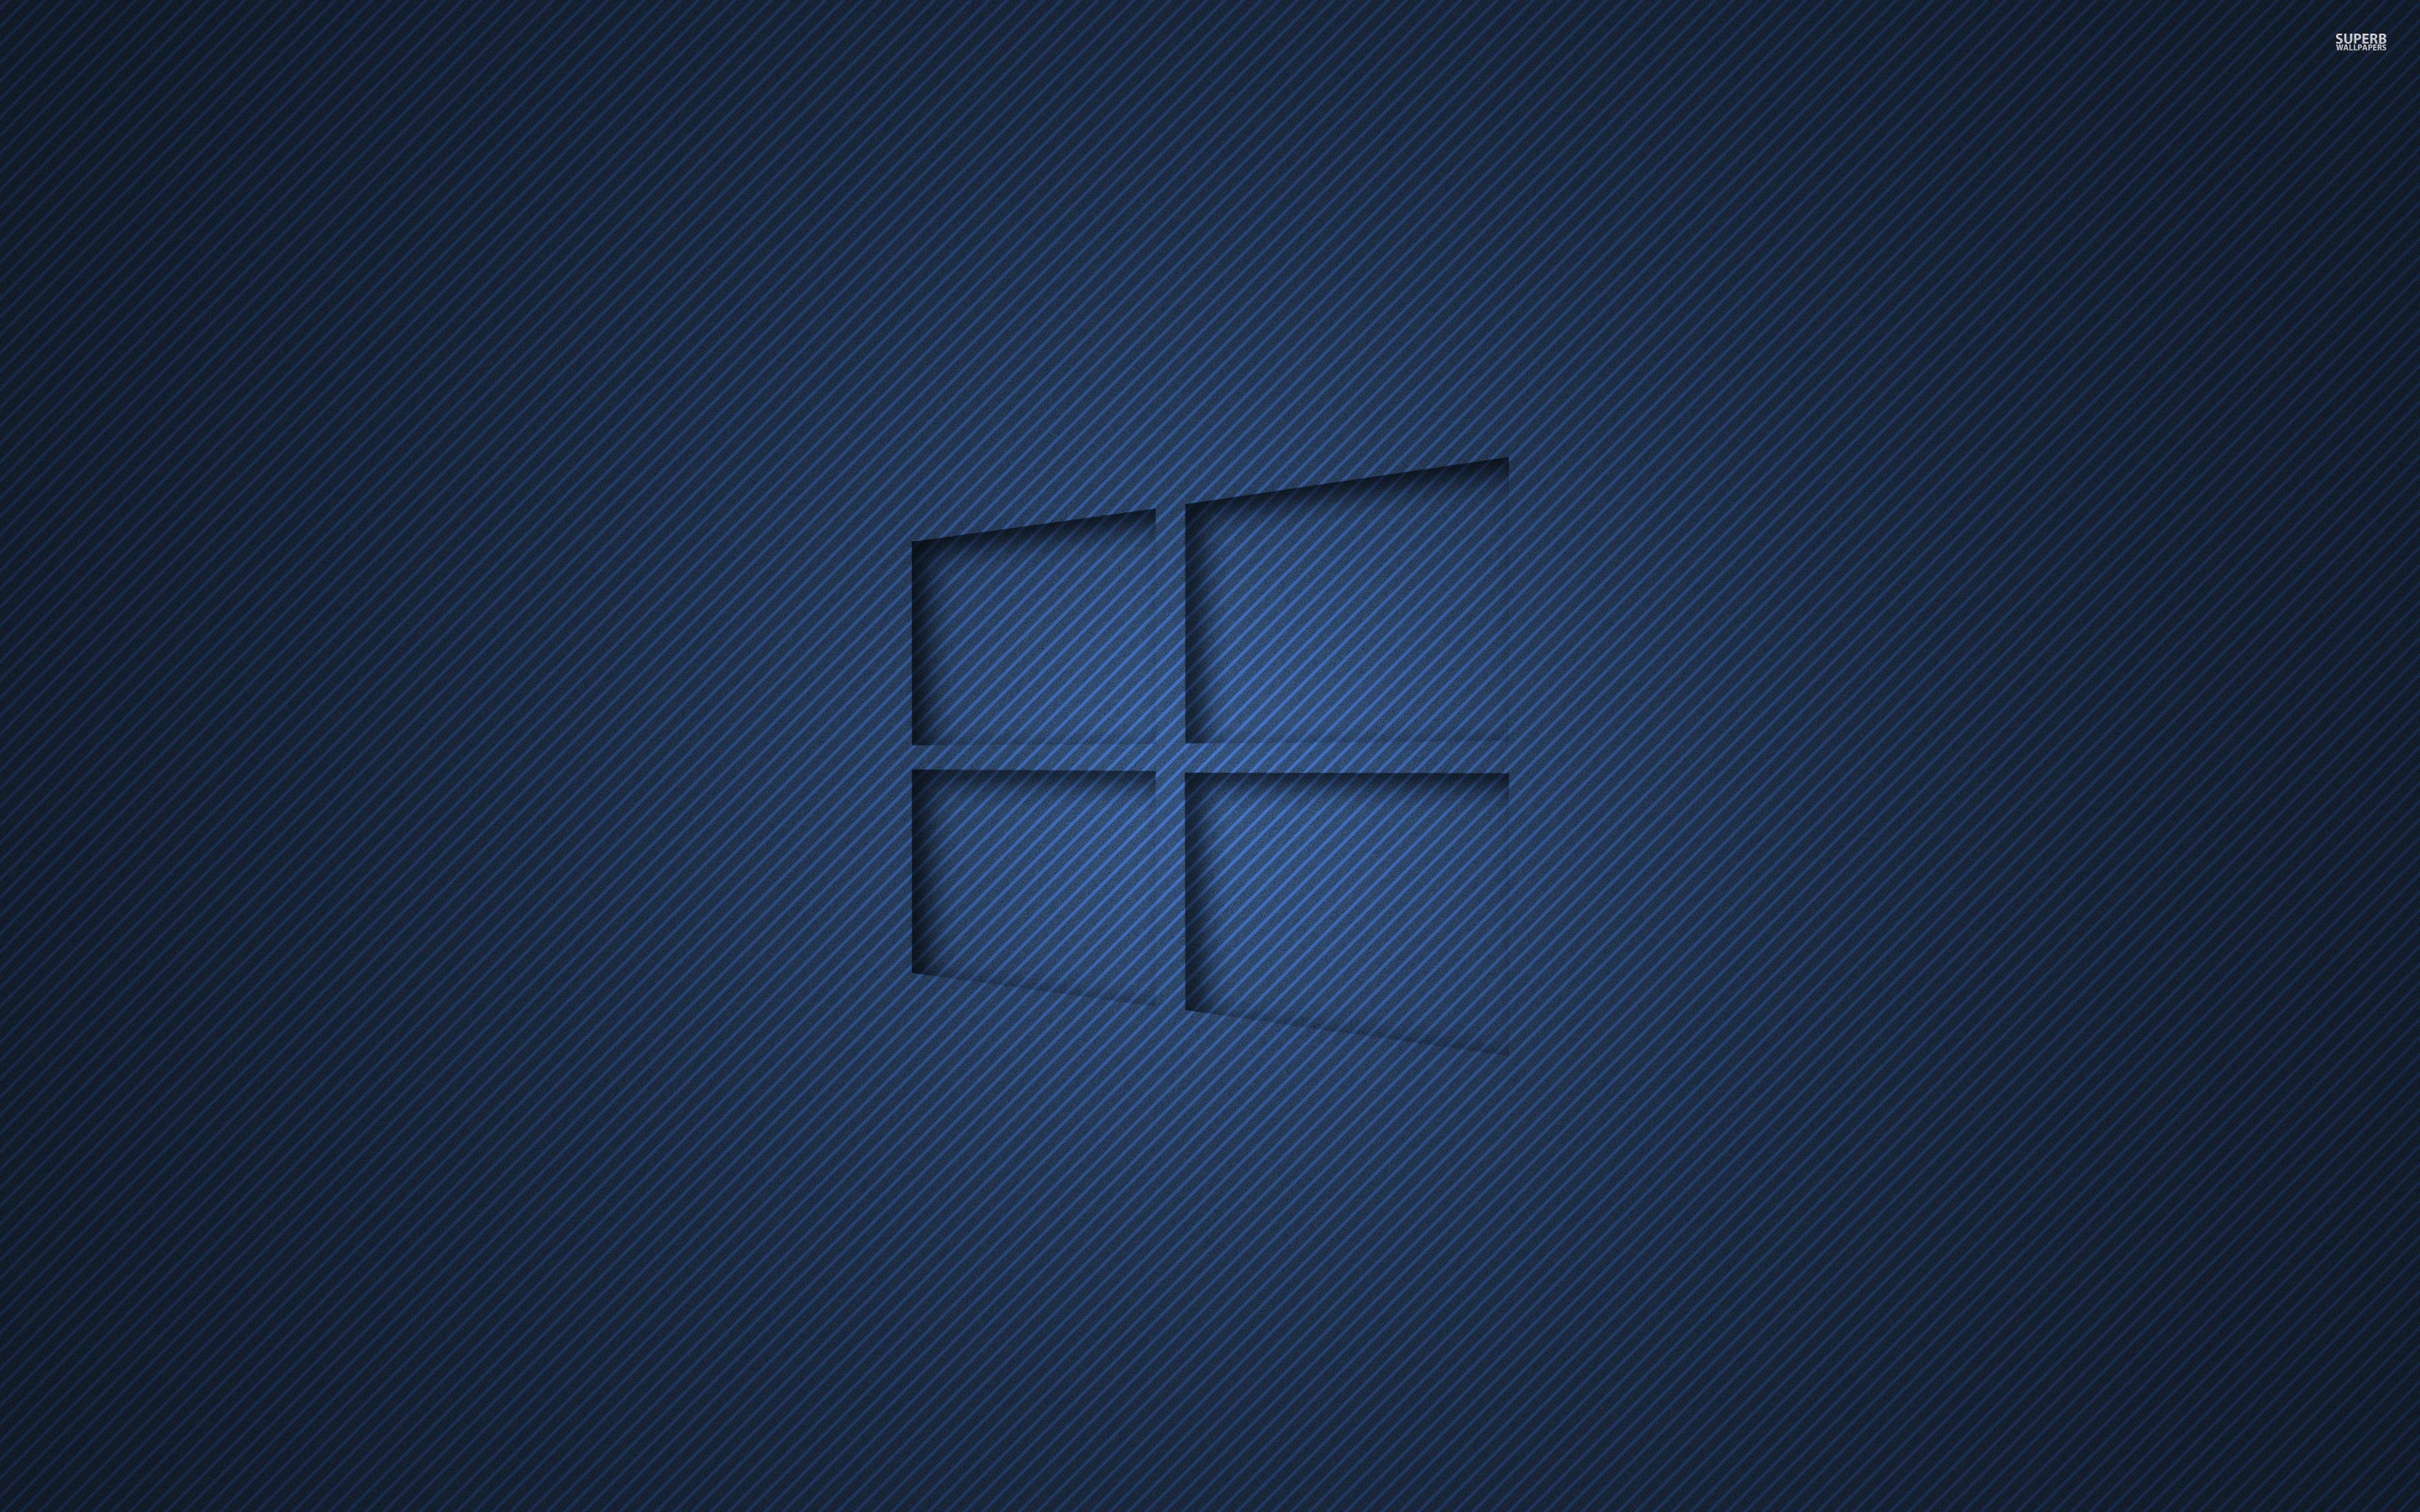 Windows 10 Hero Wallpaper 4k - Cross - HD Wallpaper 